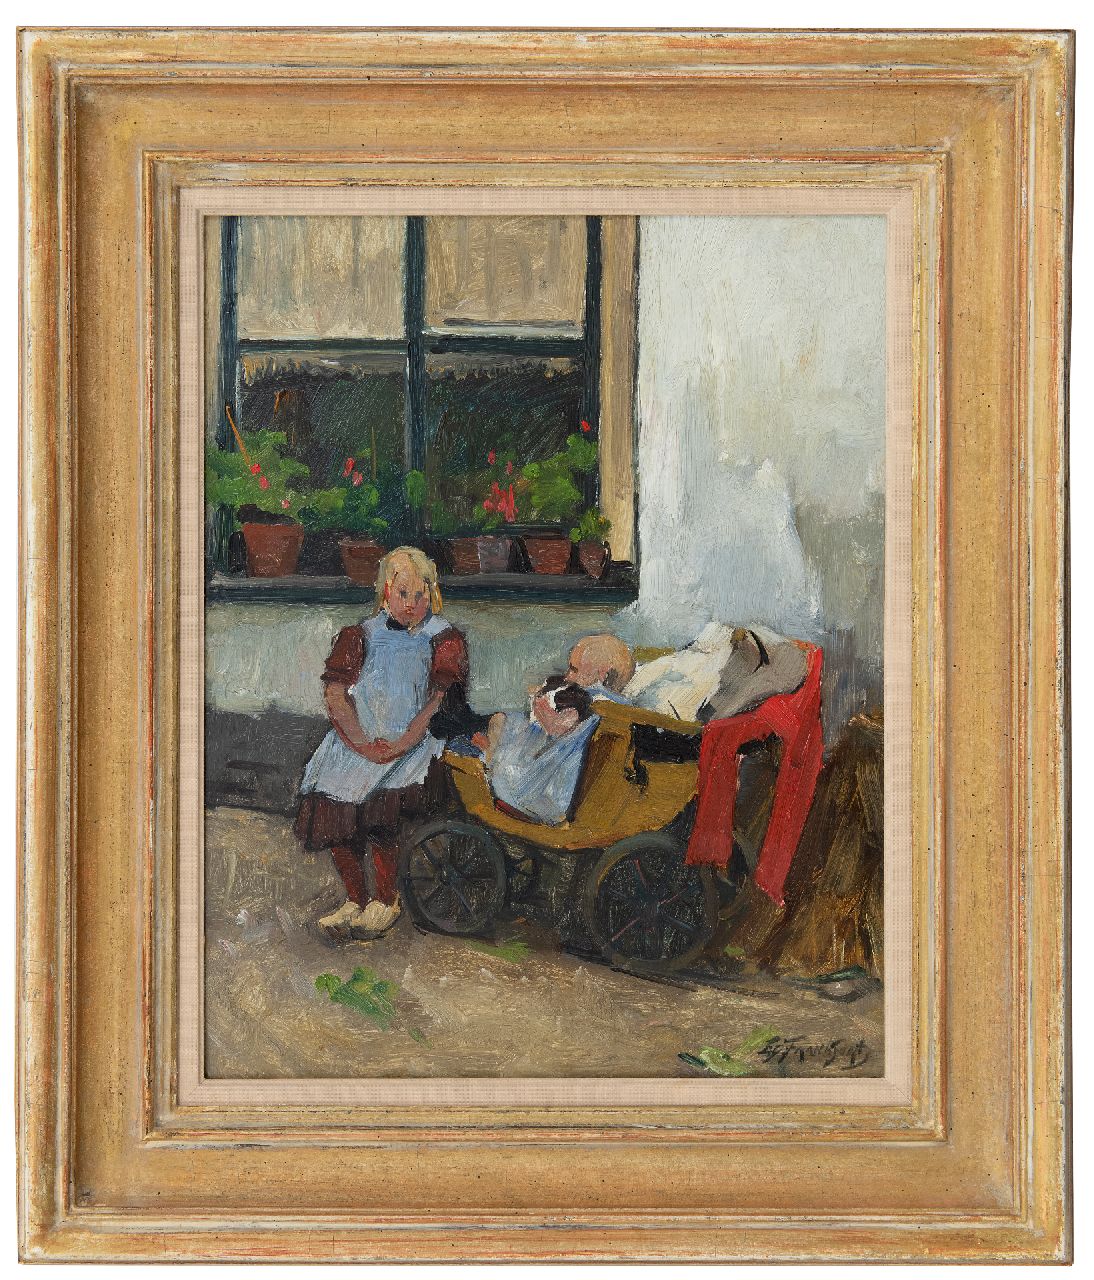 Frankfort E.  | Eduard Frankfort | Schilderijen te koop aangeboden | Op zusje passen, olieverf op board 40,2 x 31,5 cm, gesigneerd rechtsonder